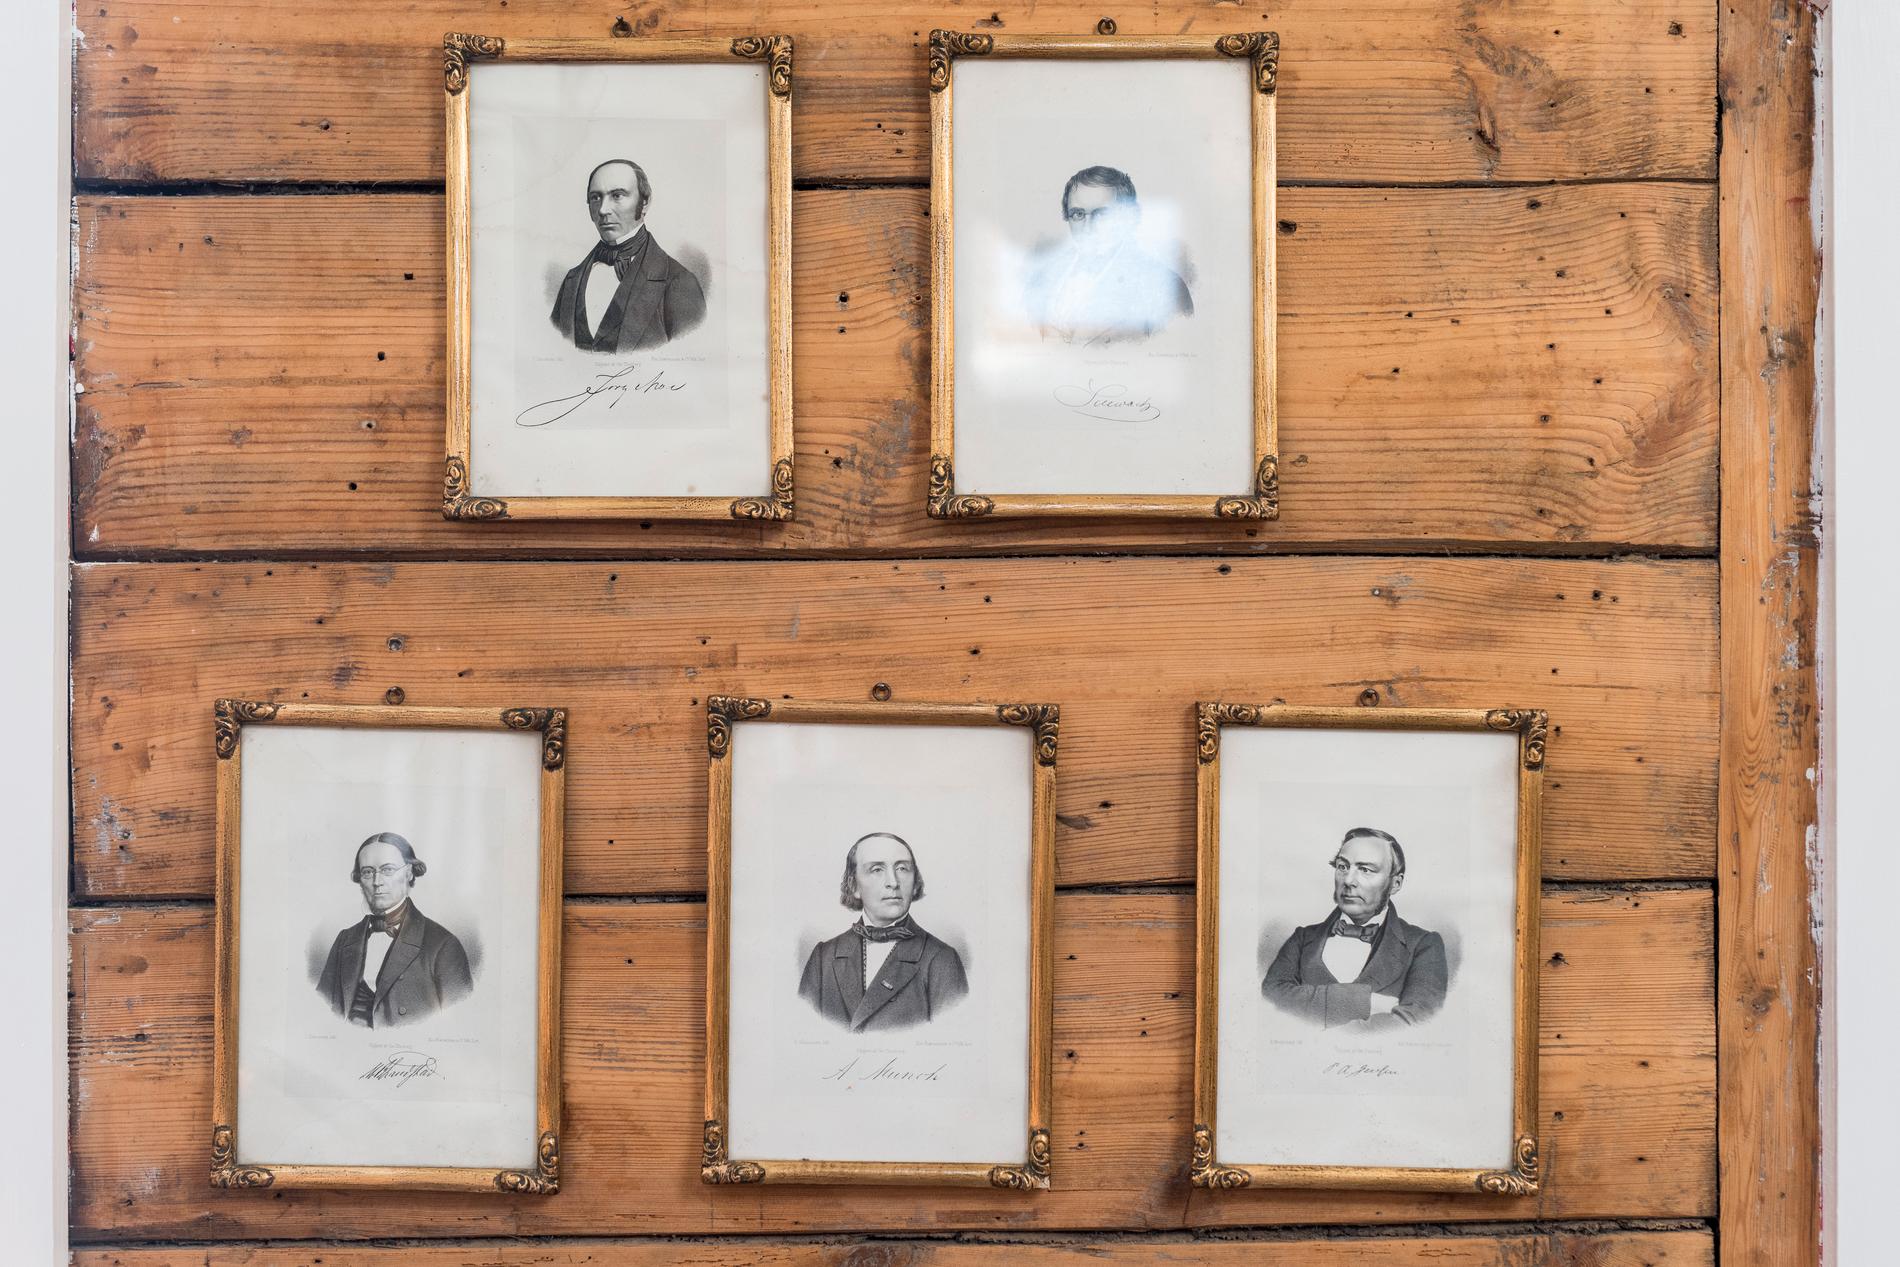 Bildene på tømmerveggen kan minne om forfattere, men er jærske misjonærer, funnet på en bruktbutikk.